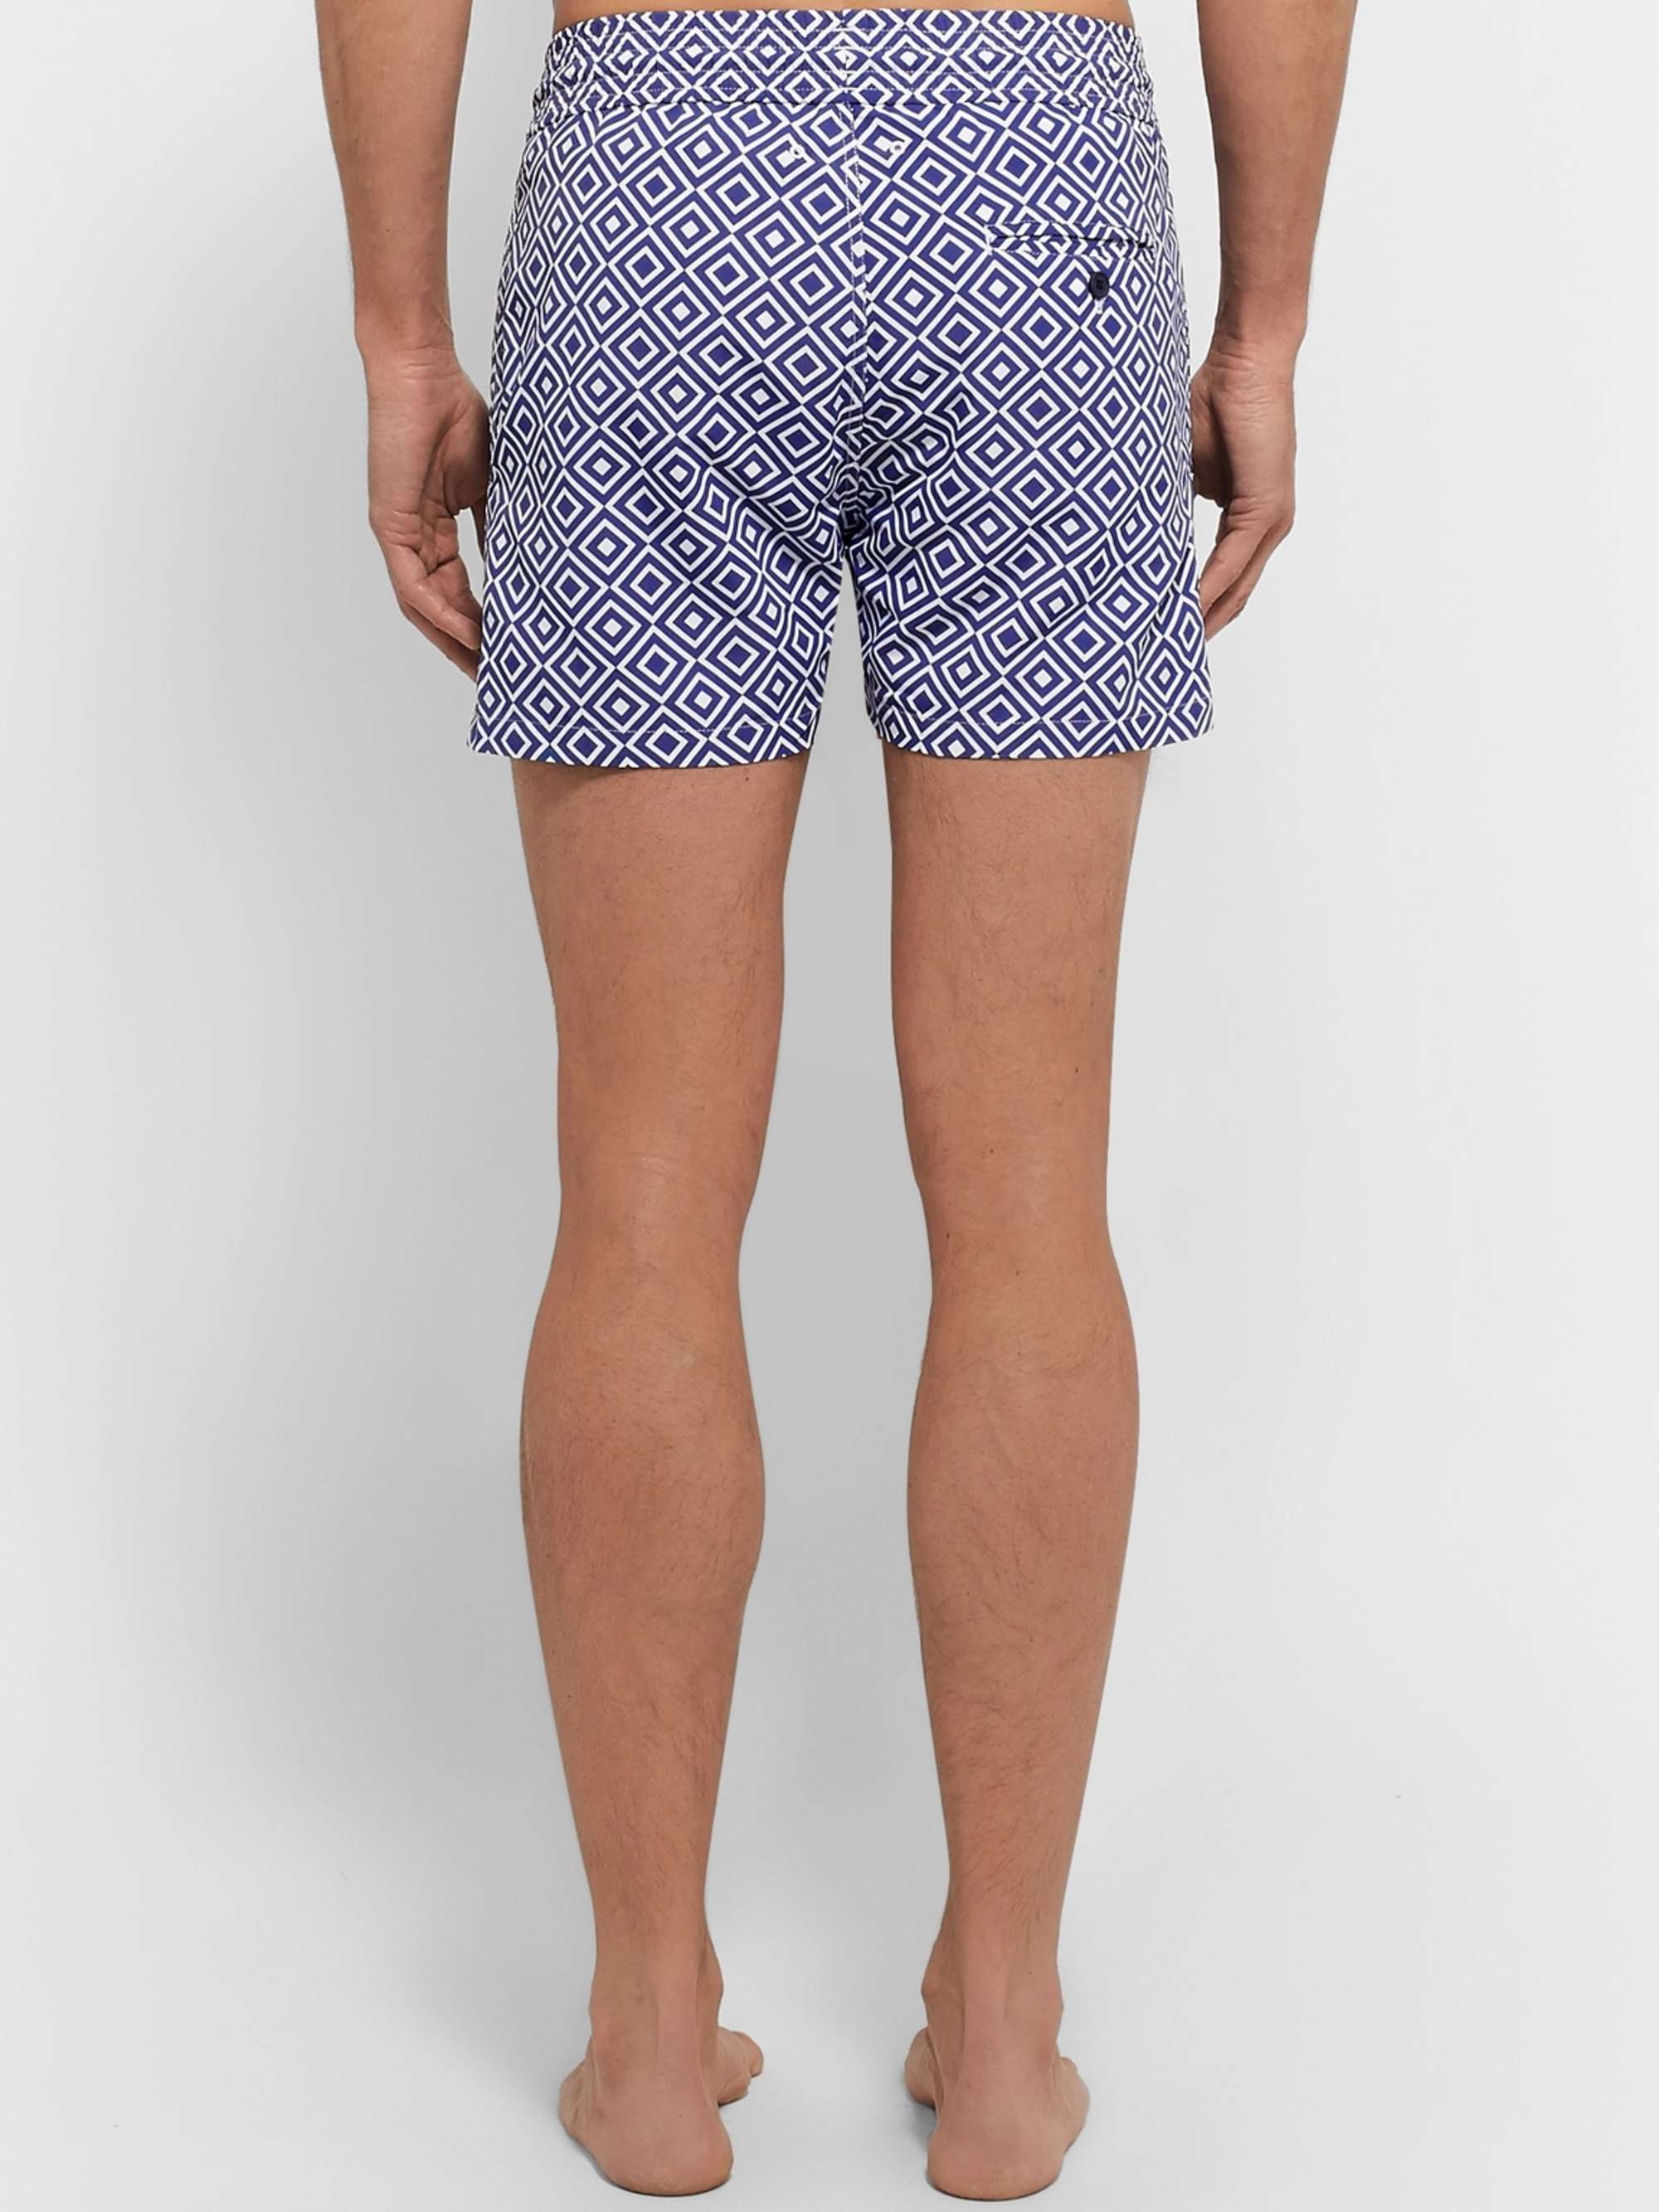 FRESCOBOL CARIOCA Angra Slim-Fit Short-Length Printed Swim Shorts